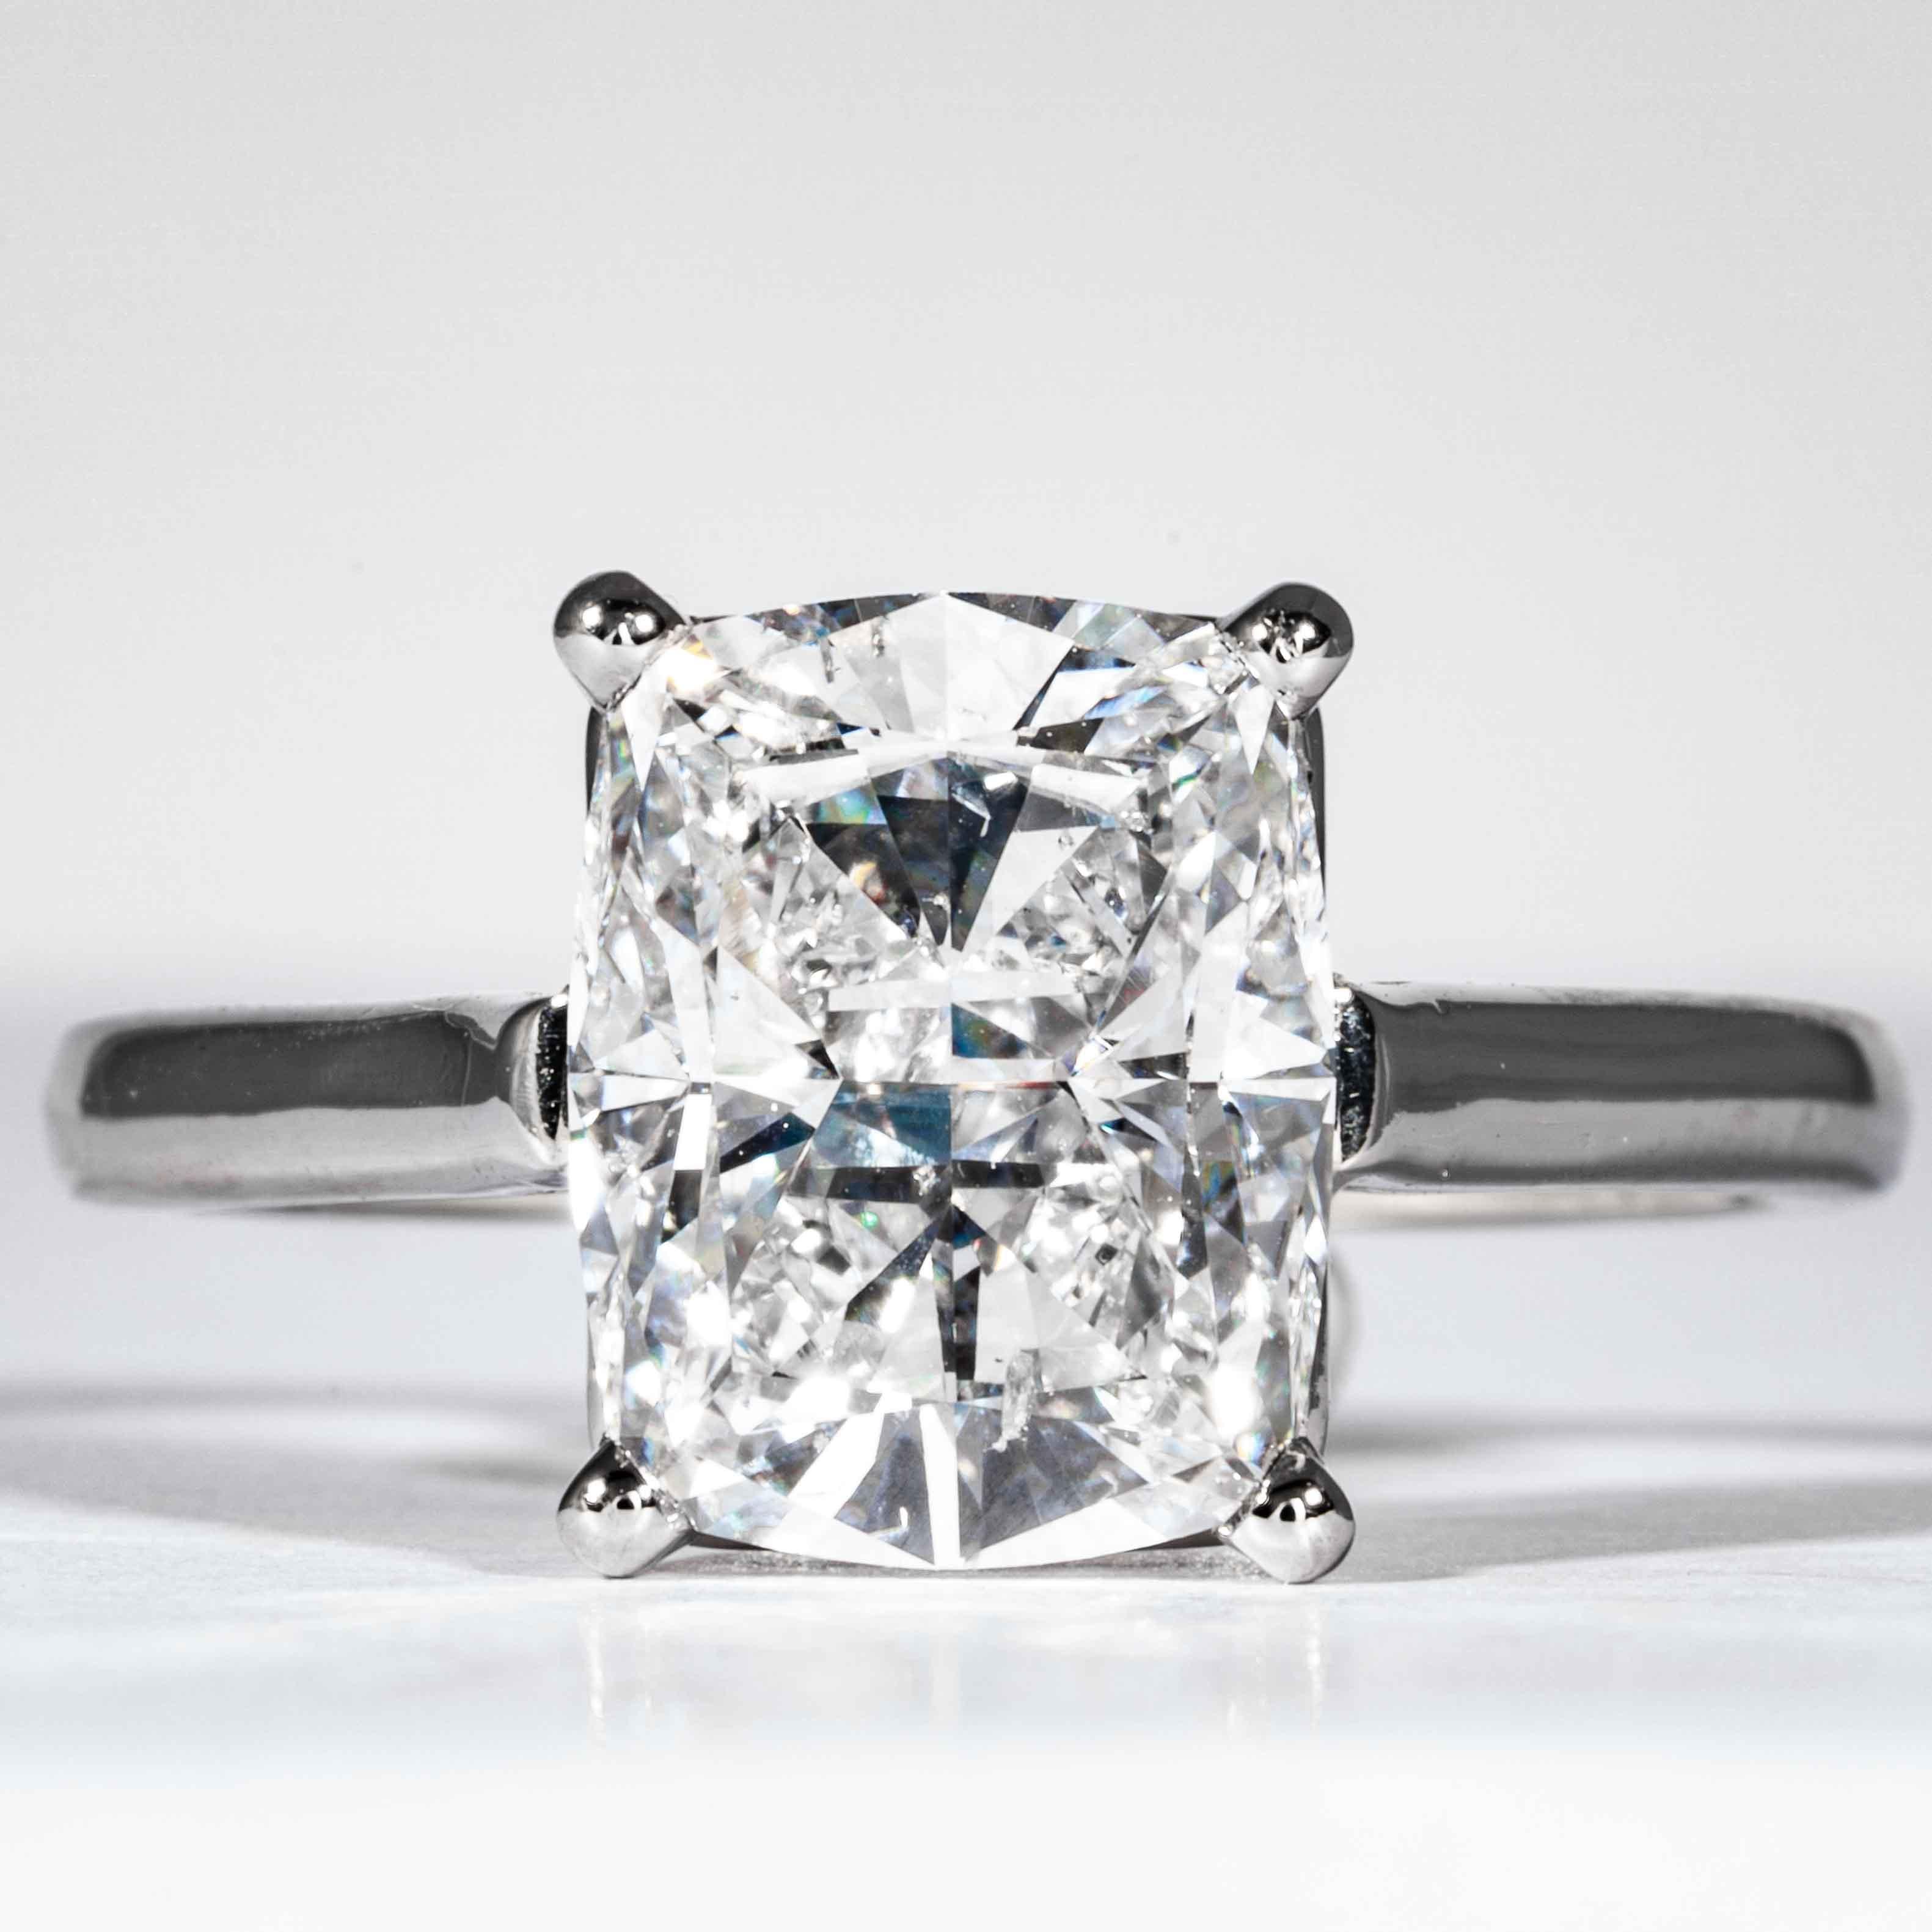 Cette bague en diamant est proposée par Shreve, Crump & Low. Ce diamant coussin de 3,05 carats certifié GIA D SI1 mesurant 10,07 x 7,92 x 5,20 mm est serti sur mesure dans une bague solitaire en platine fabriquée à la main, signée Tiffany & Co. La